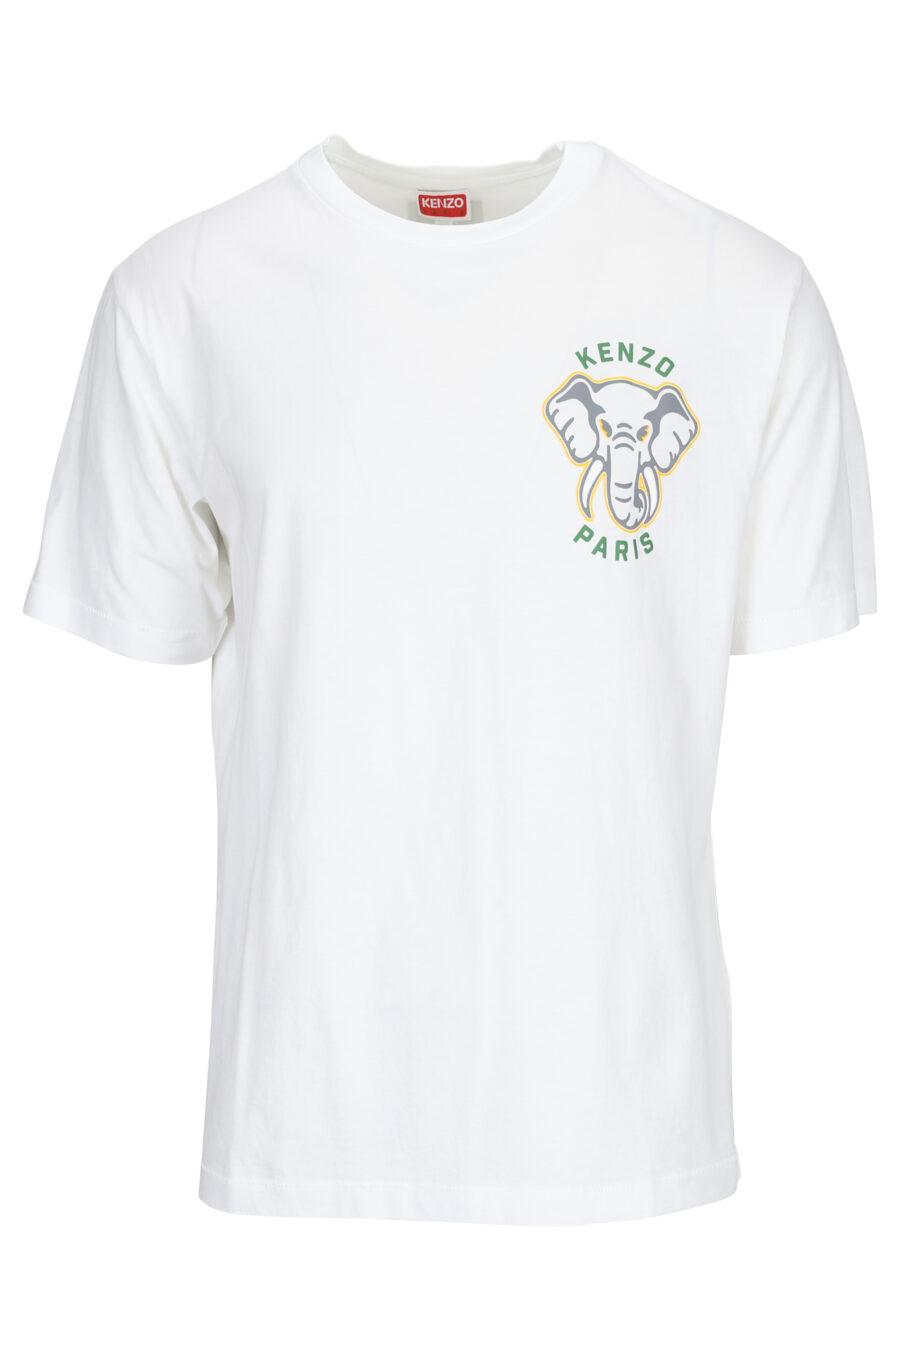 Camiseta blanca con minilogo elefante - 3612230553590